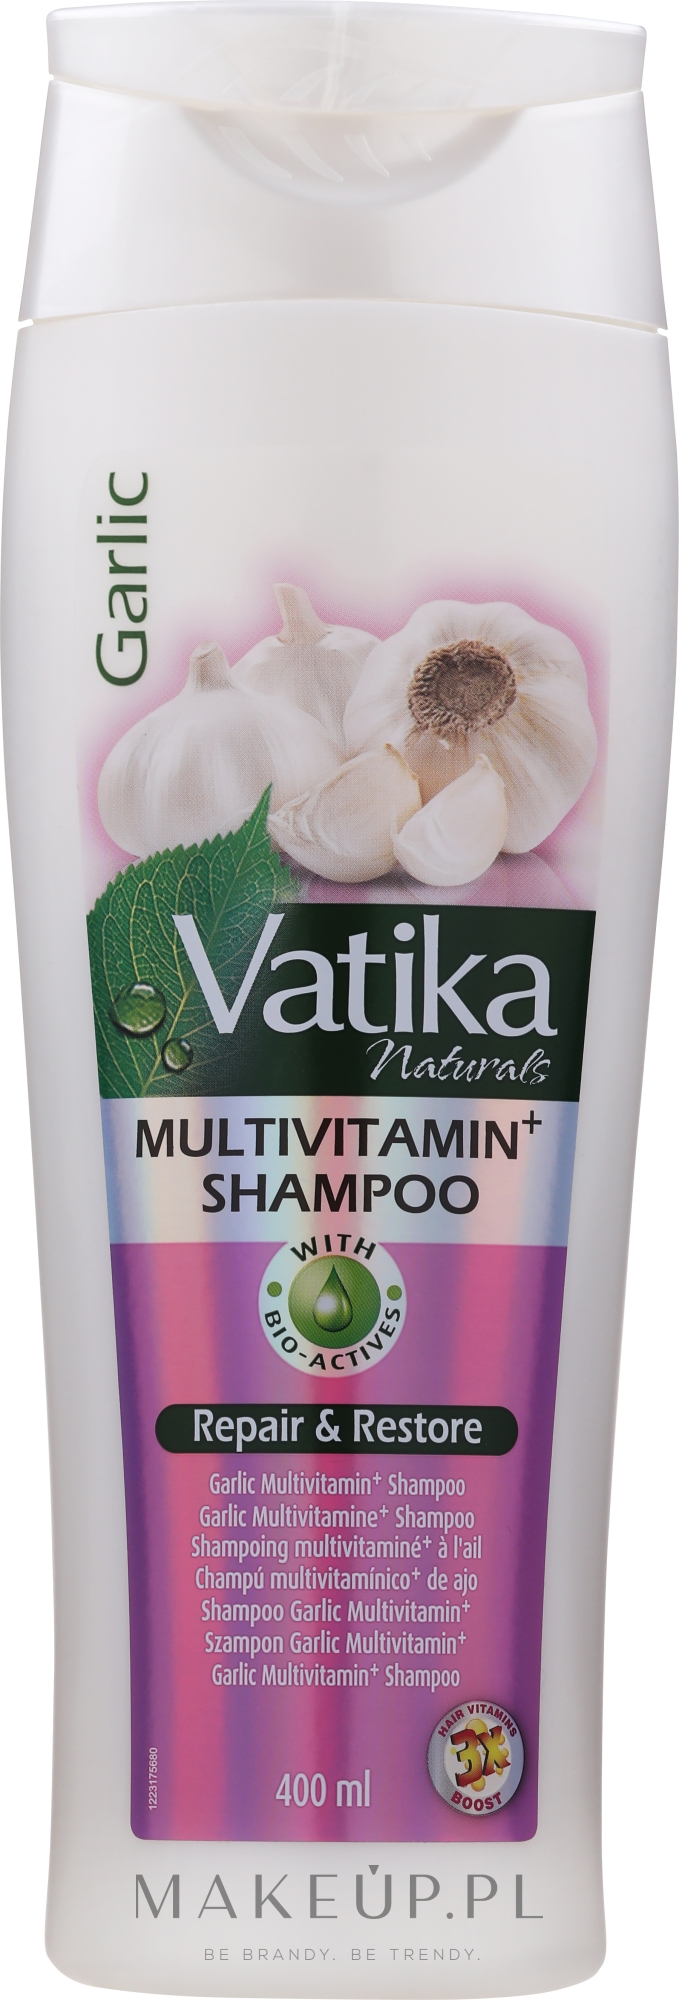 Regenerujący szampon do włosów z wyciągiem z czosnku - Dabur Vatika Garlic Multivitamin+ Shampoo Repair & Restore — Zdjęcie 400 ml